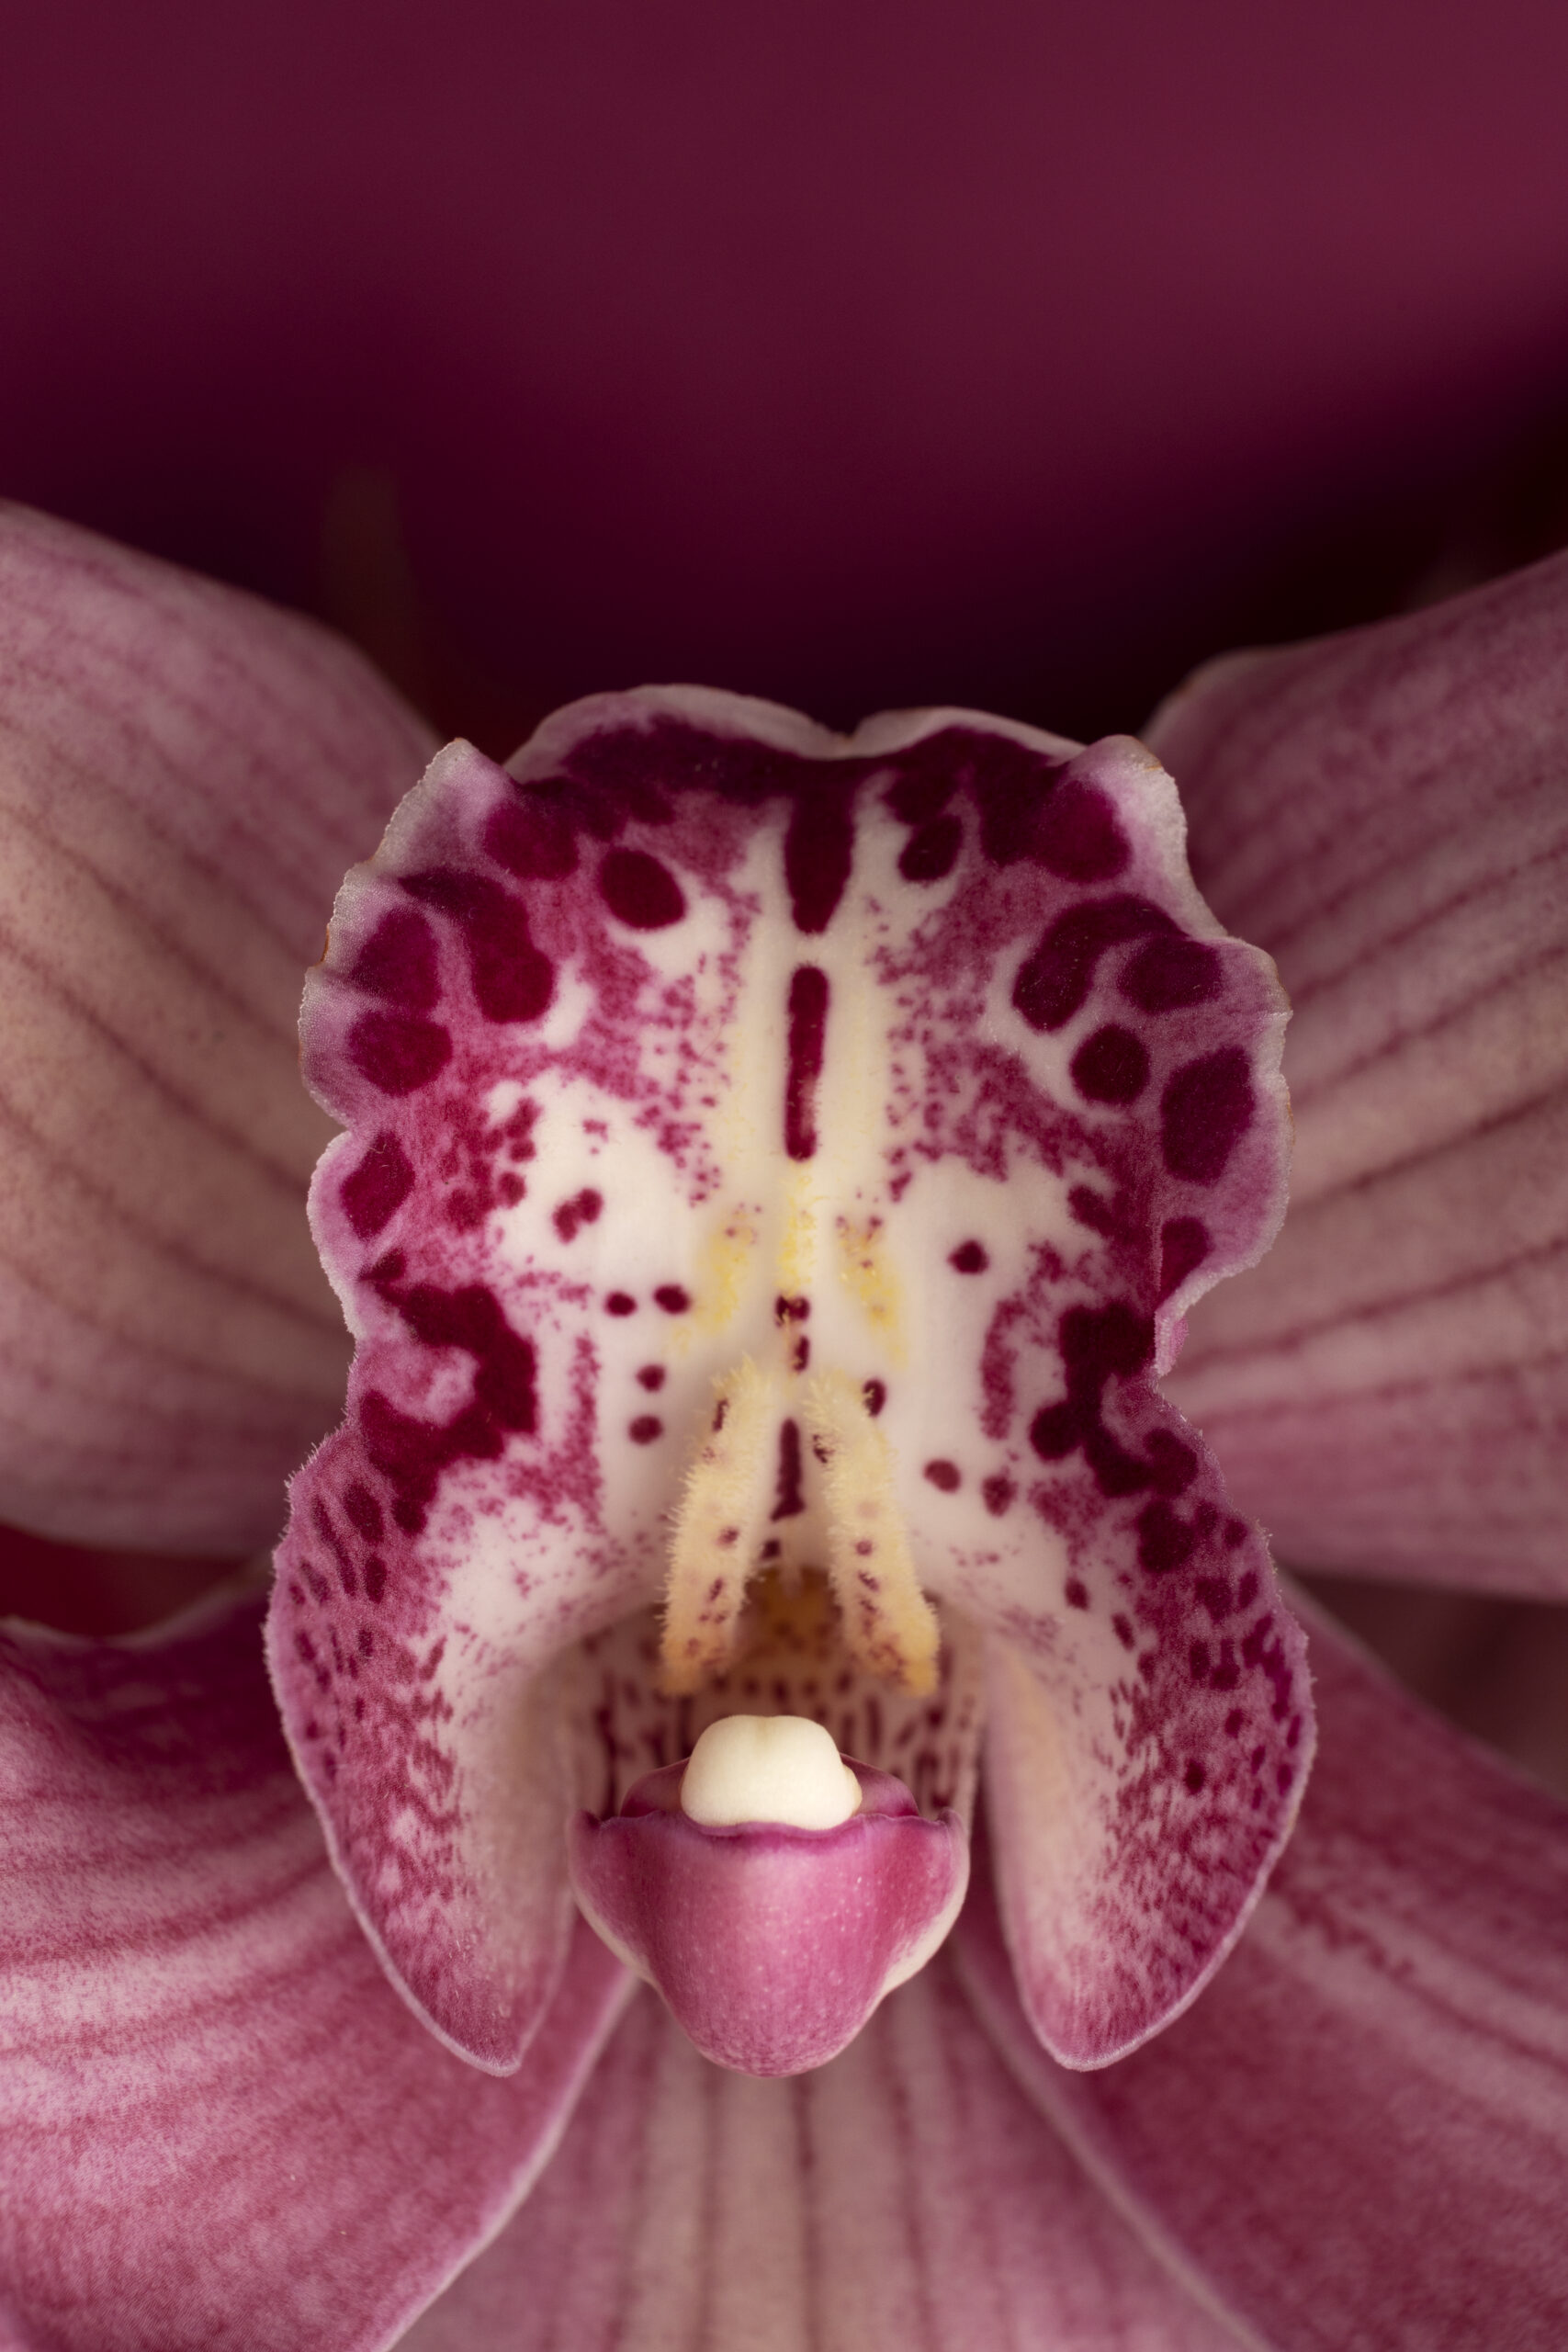 Wunderschöne Orchidee wie eine heilige Yoni am erblühen